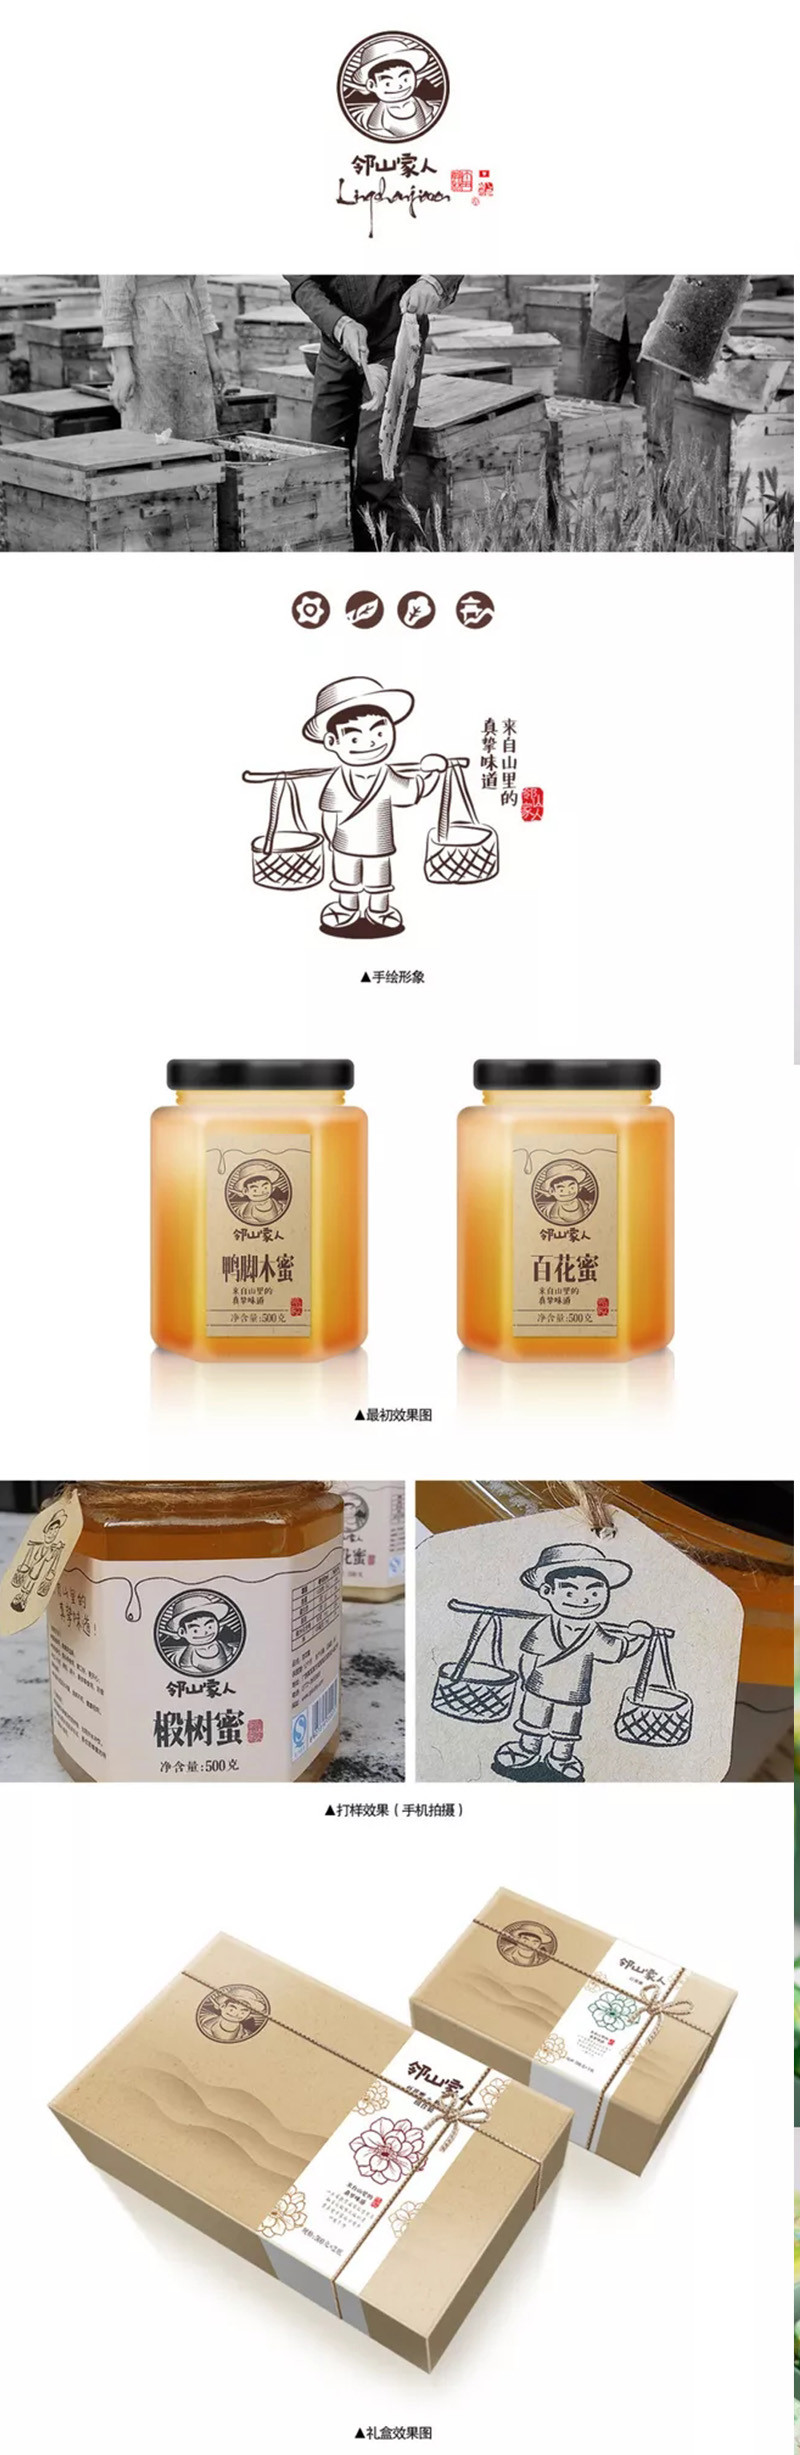 蜂蜜礼盒系列设计